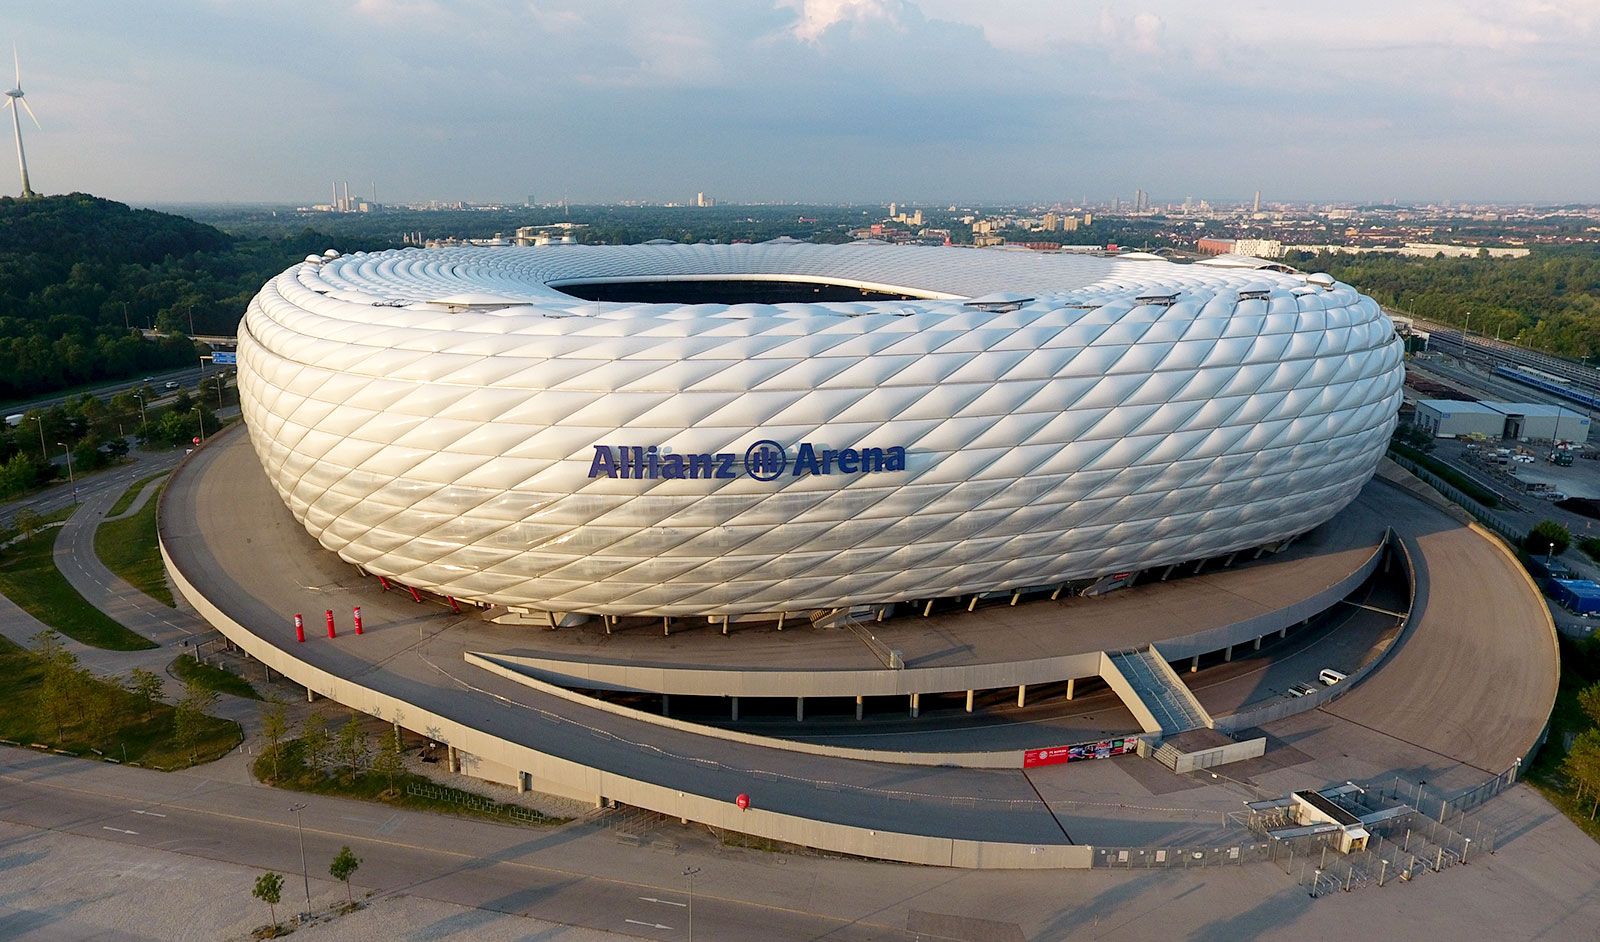 Sân vận động Allianz Arena – Biểu tượng của sự đổi mới và niềm đam mê bóng đá